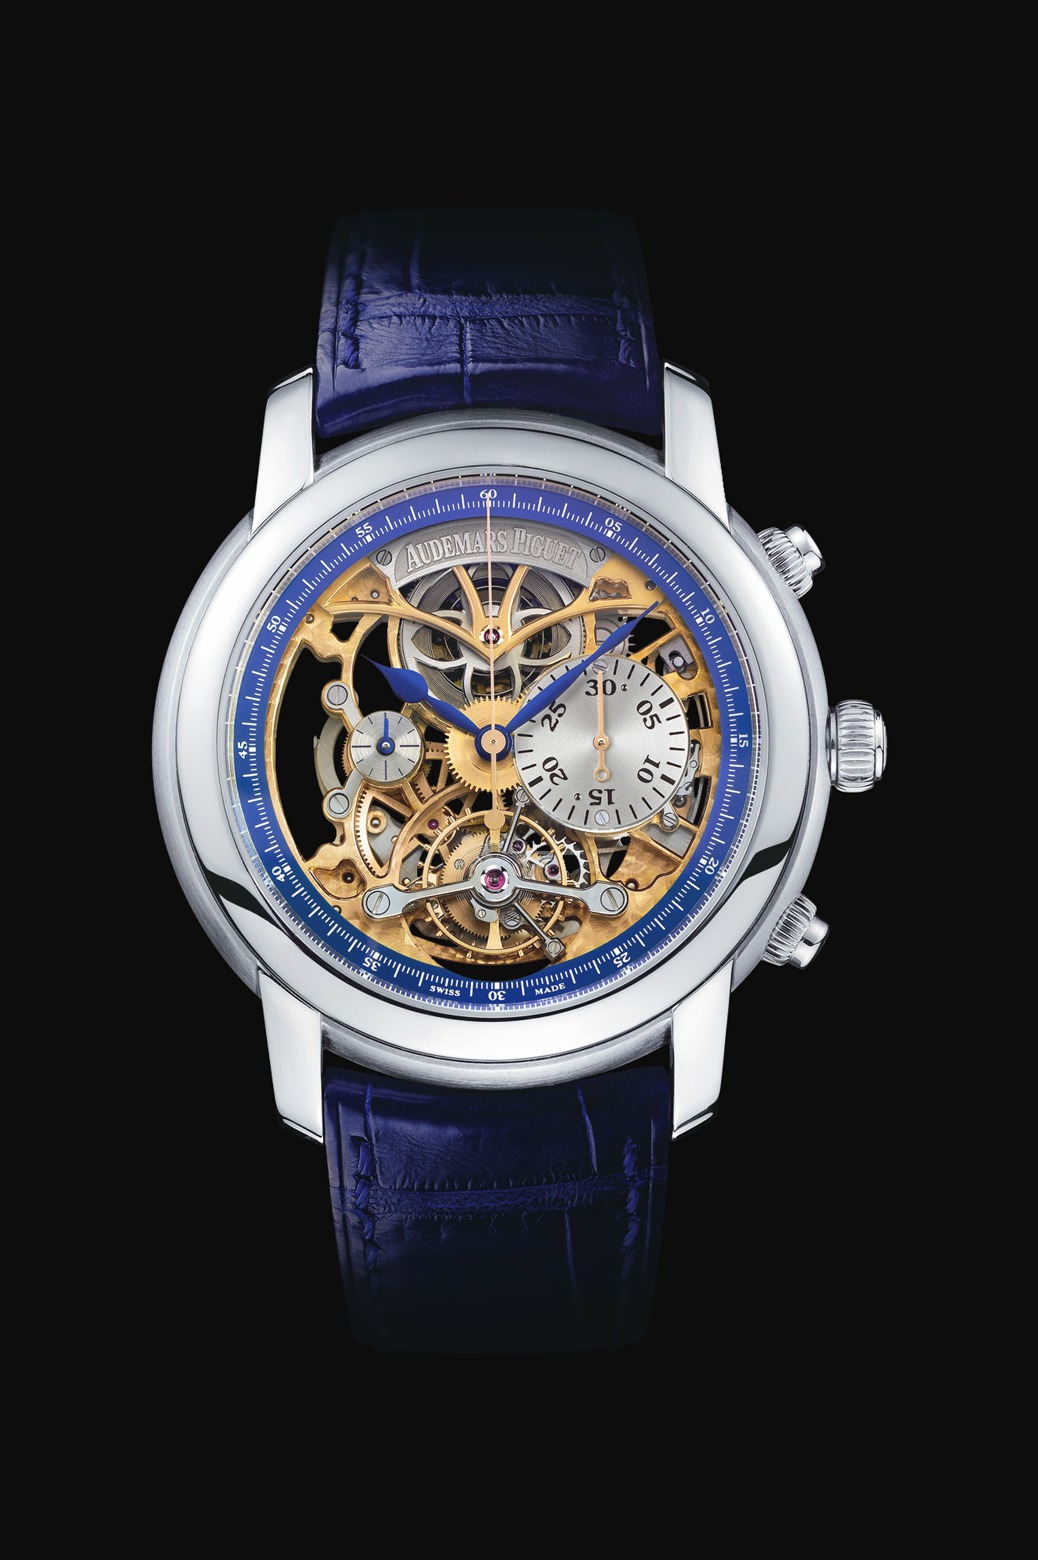 Audemars Piguet Jules Audemars Chronograph Tourbillon Platinum watch REF: 26353PT.OO.D028CR.01